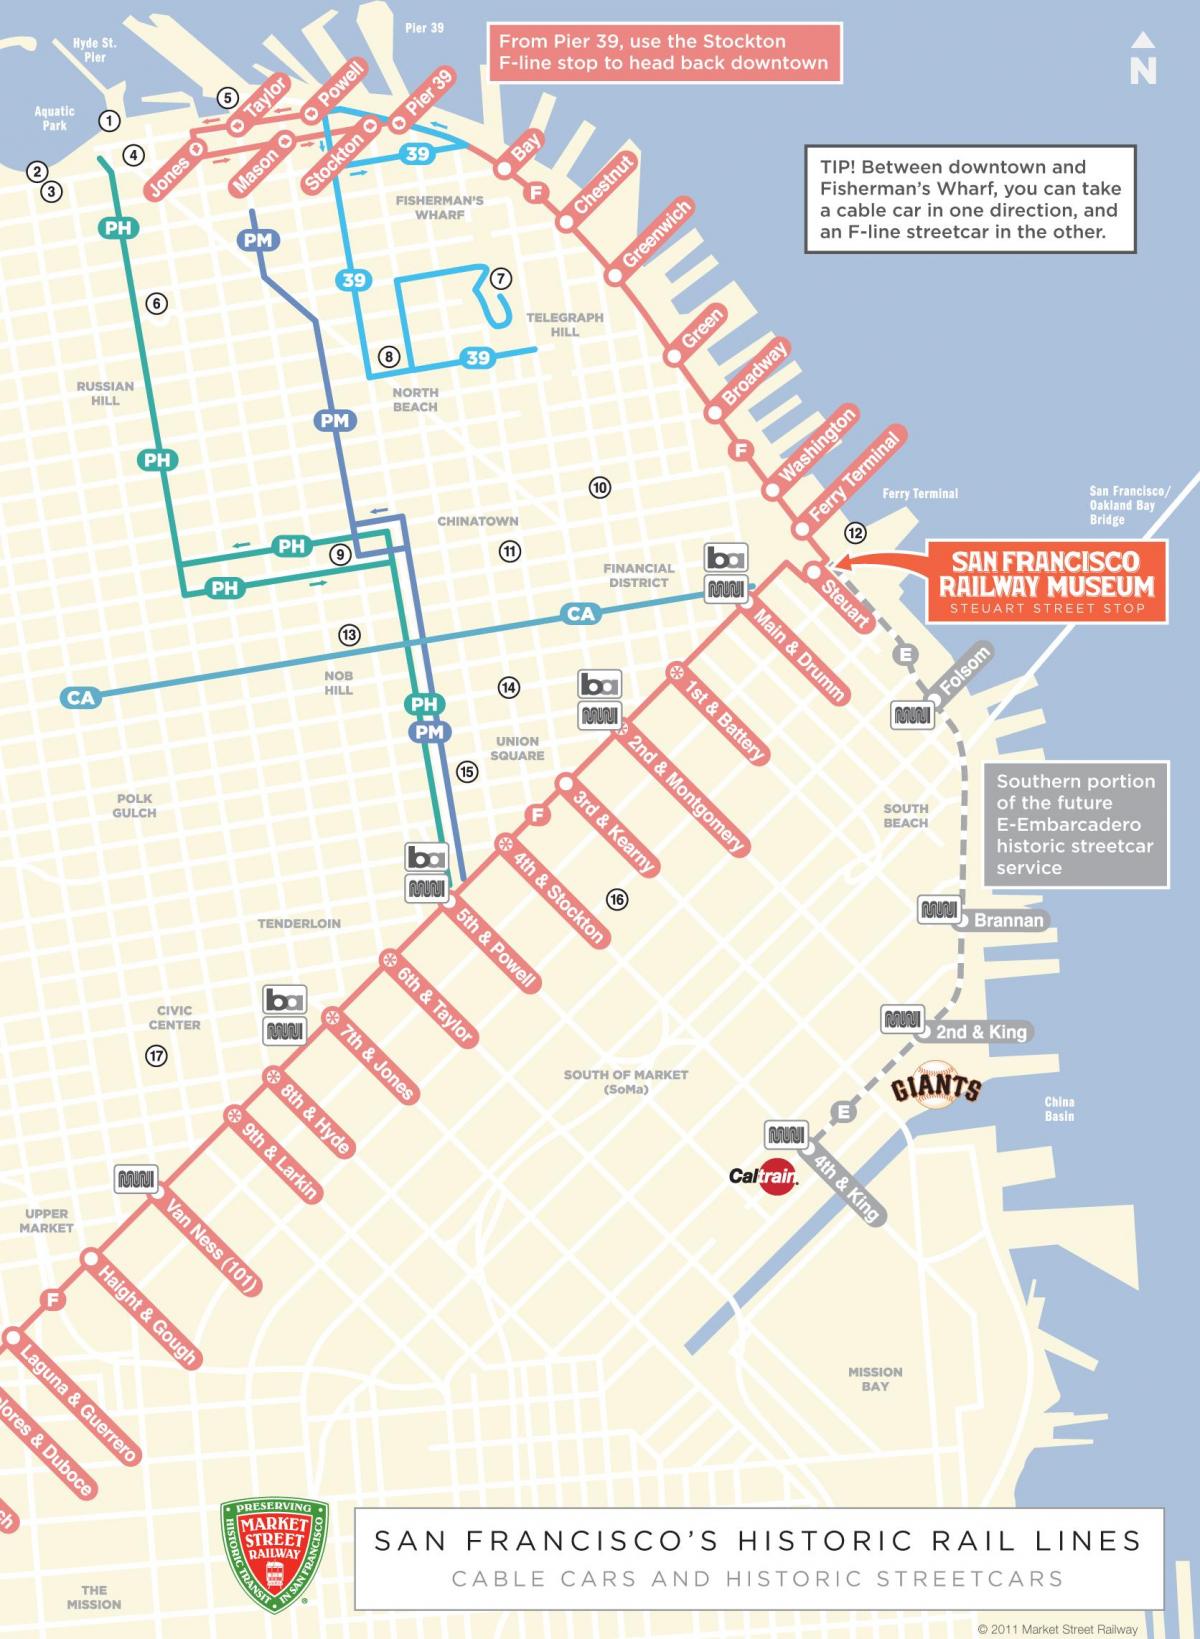 Peta cable car dengan rute San Francisco ca